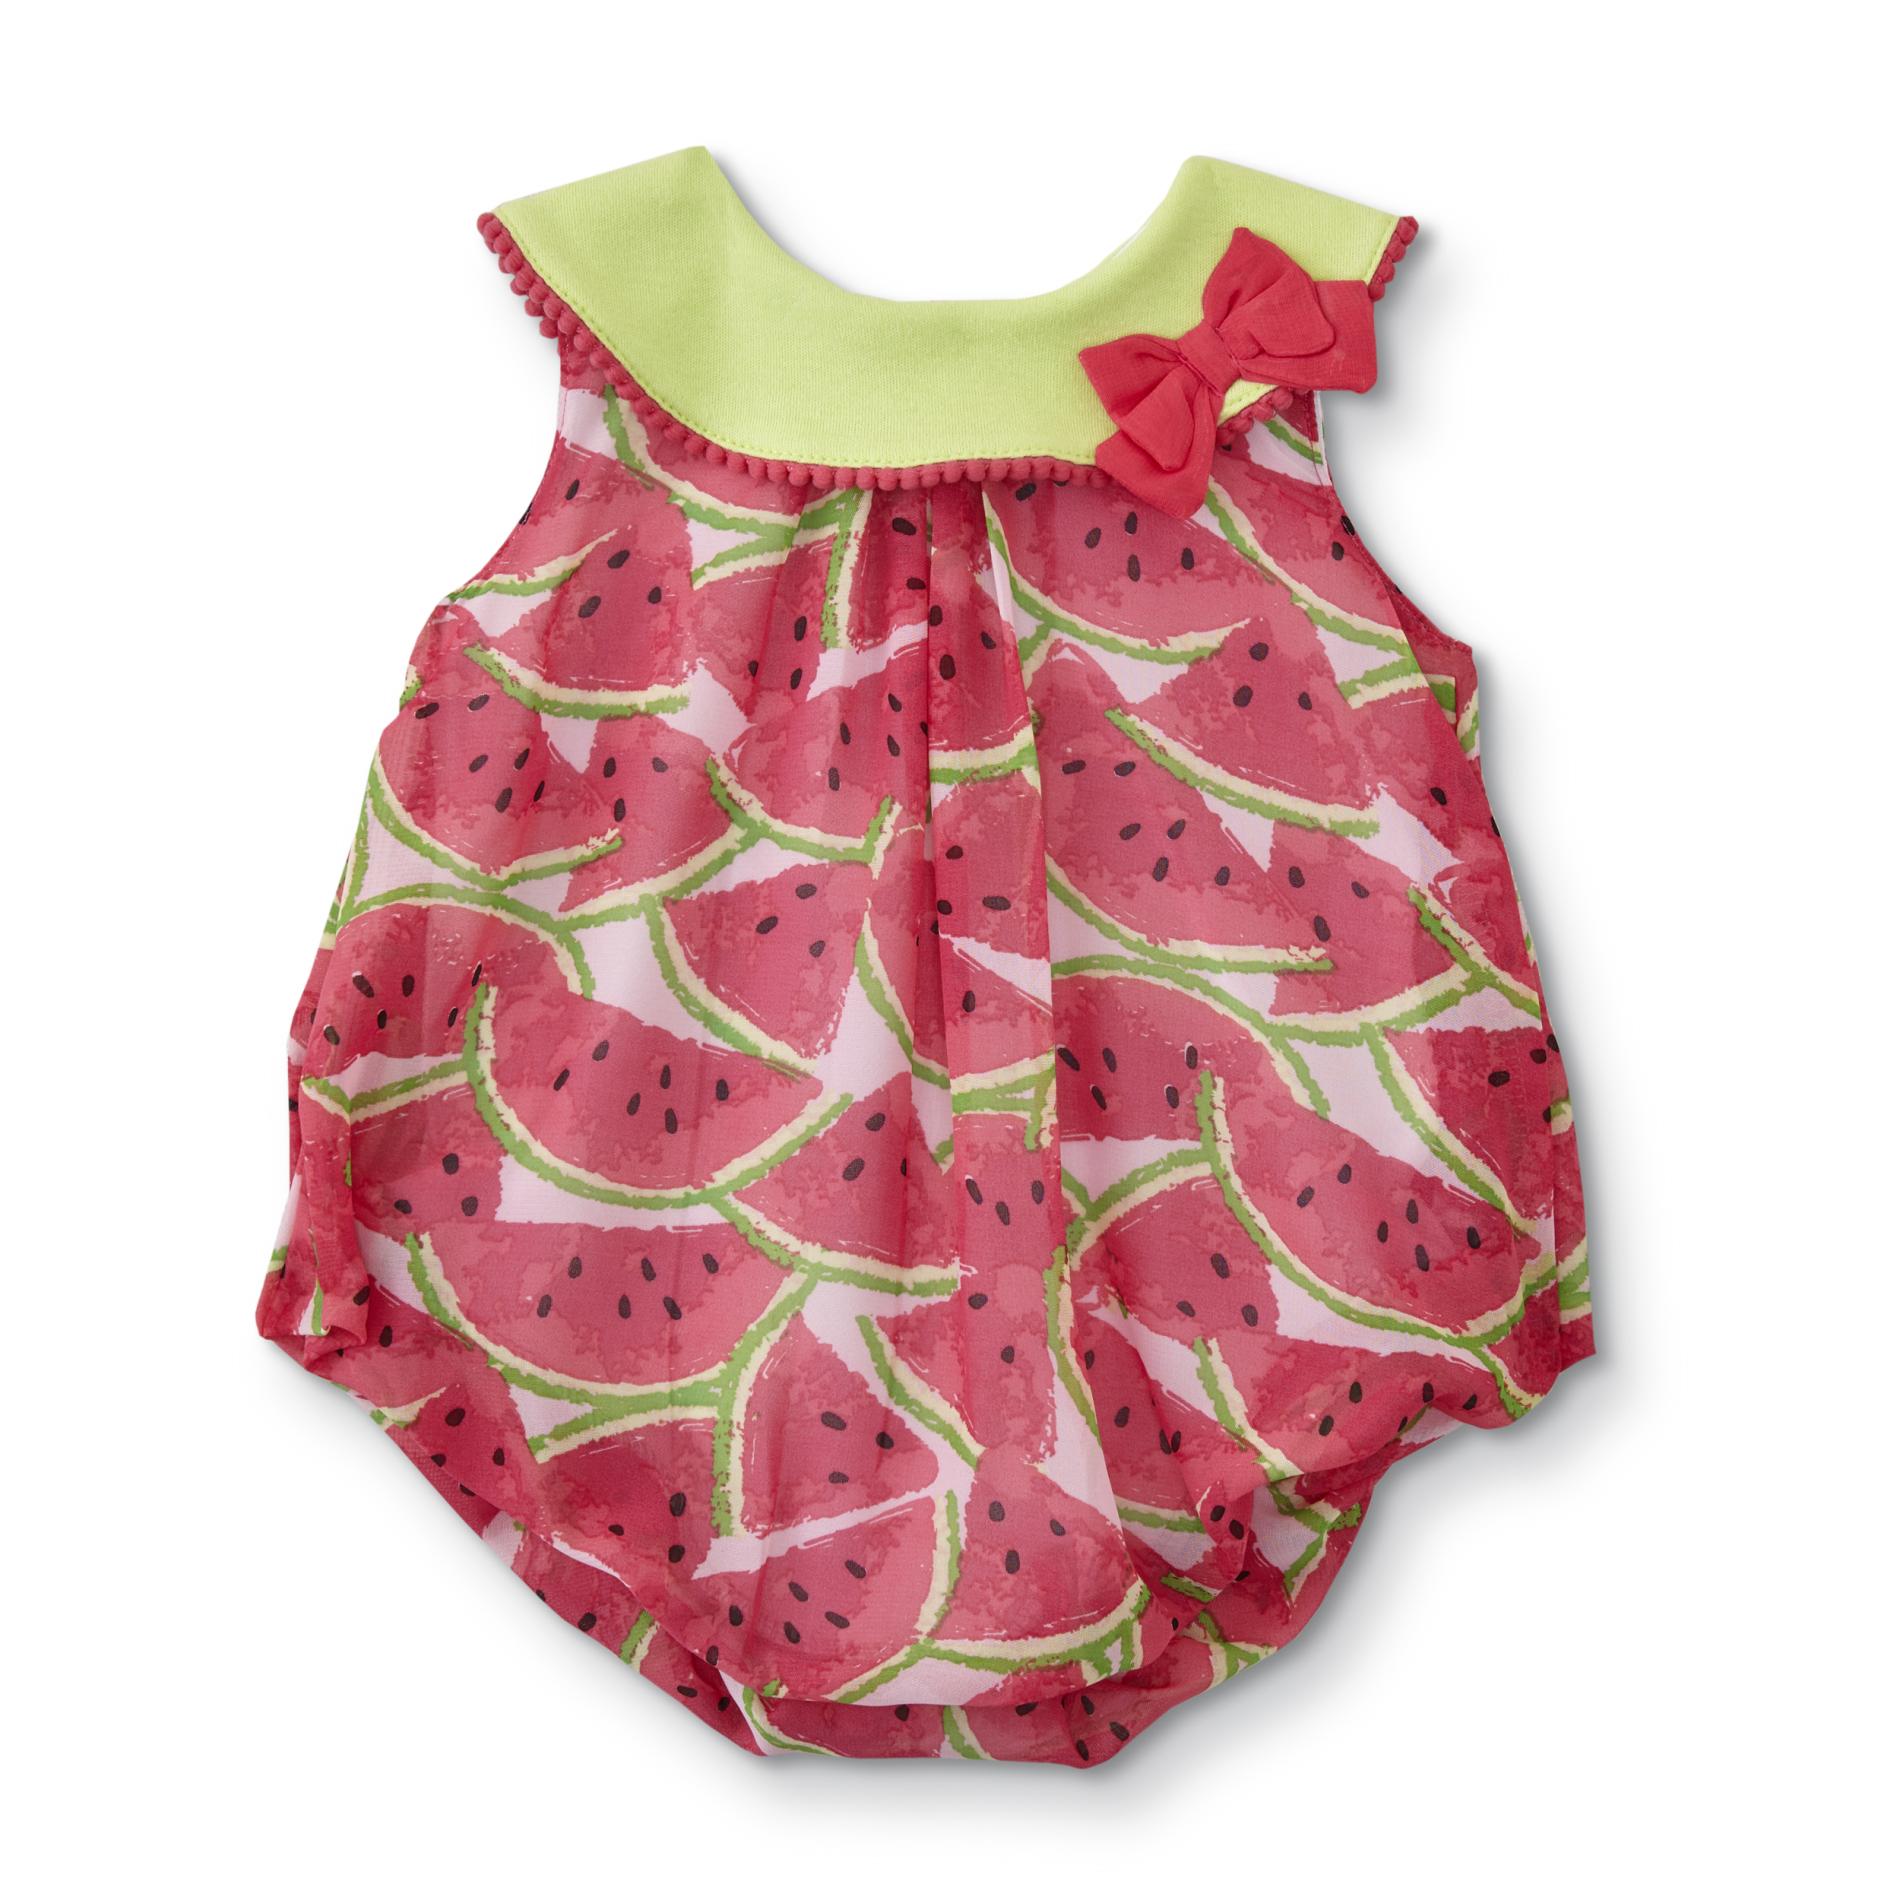 Baby Essentials Infant Girls' Romper - Watermelon